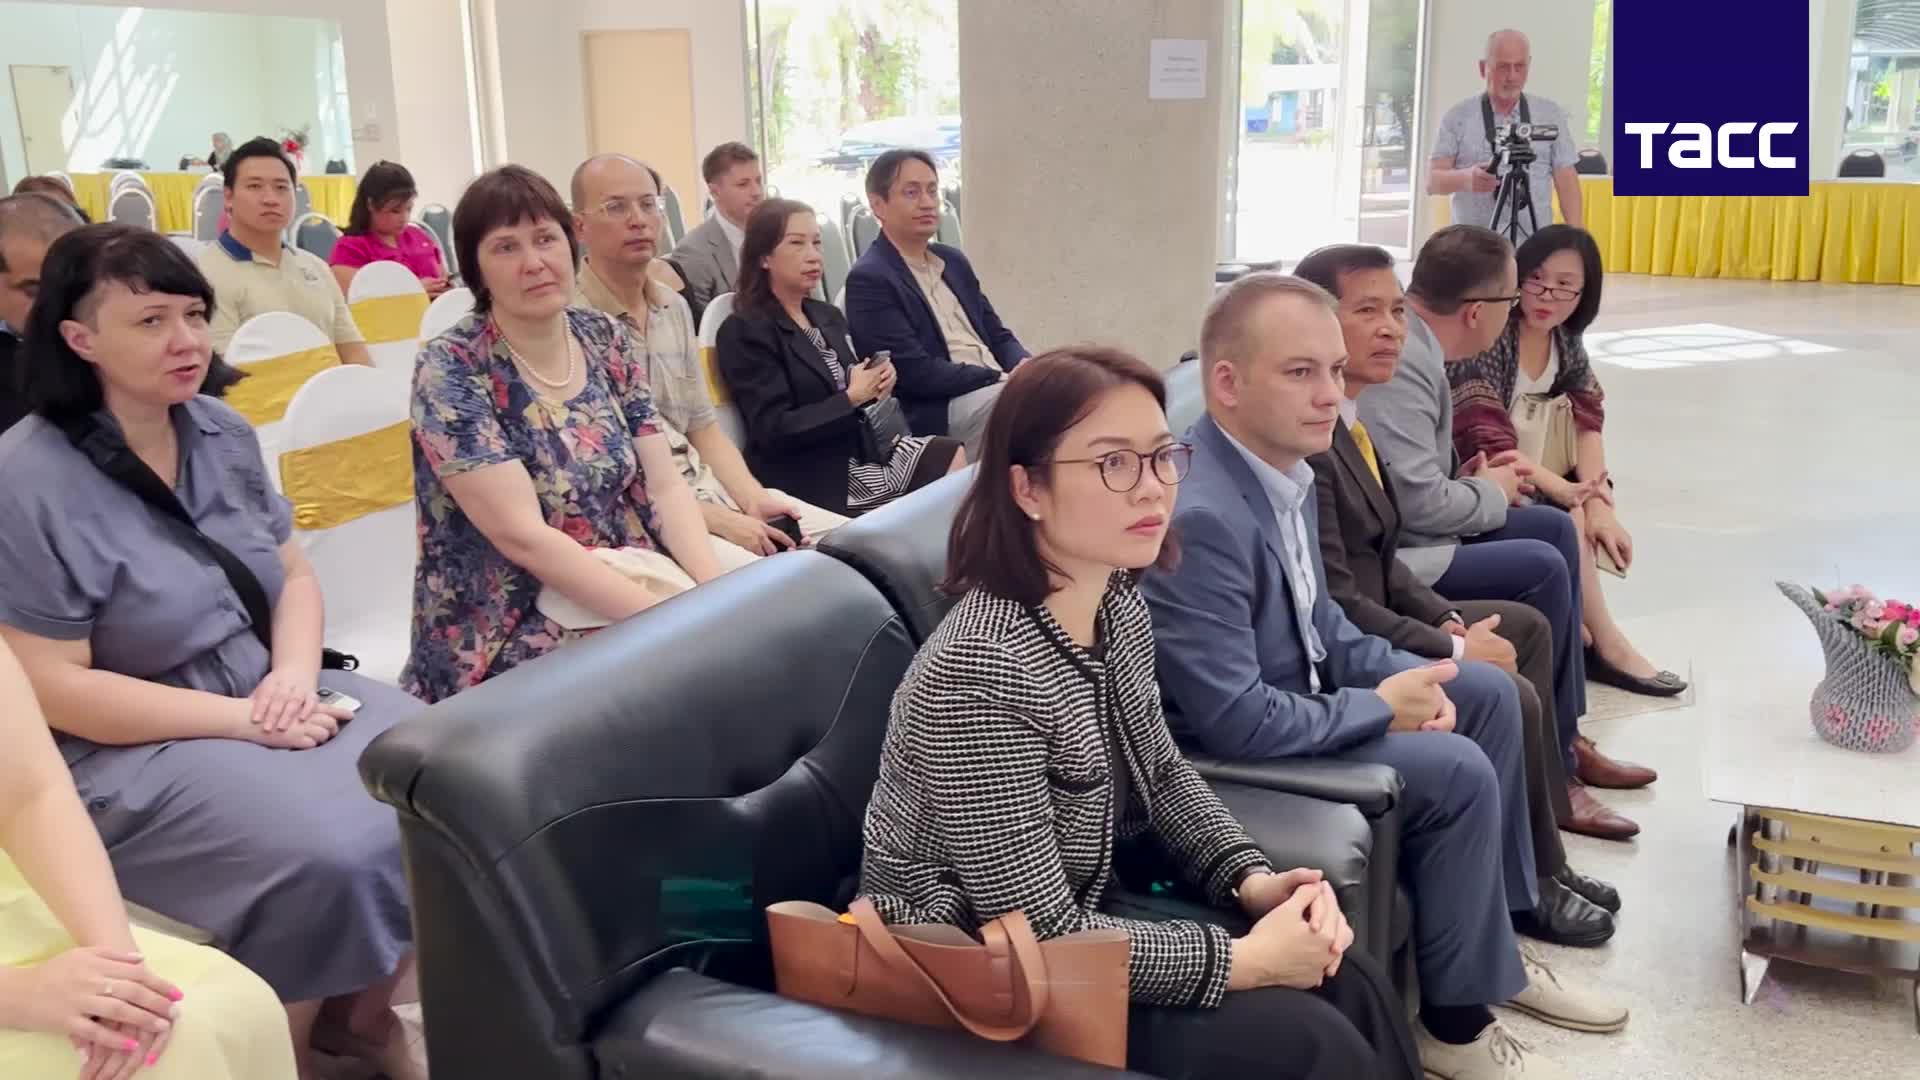 Центр обучения русскому языку открылся в Университете принца Сонгкхла в Пхукете